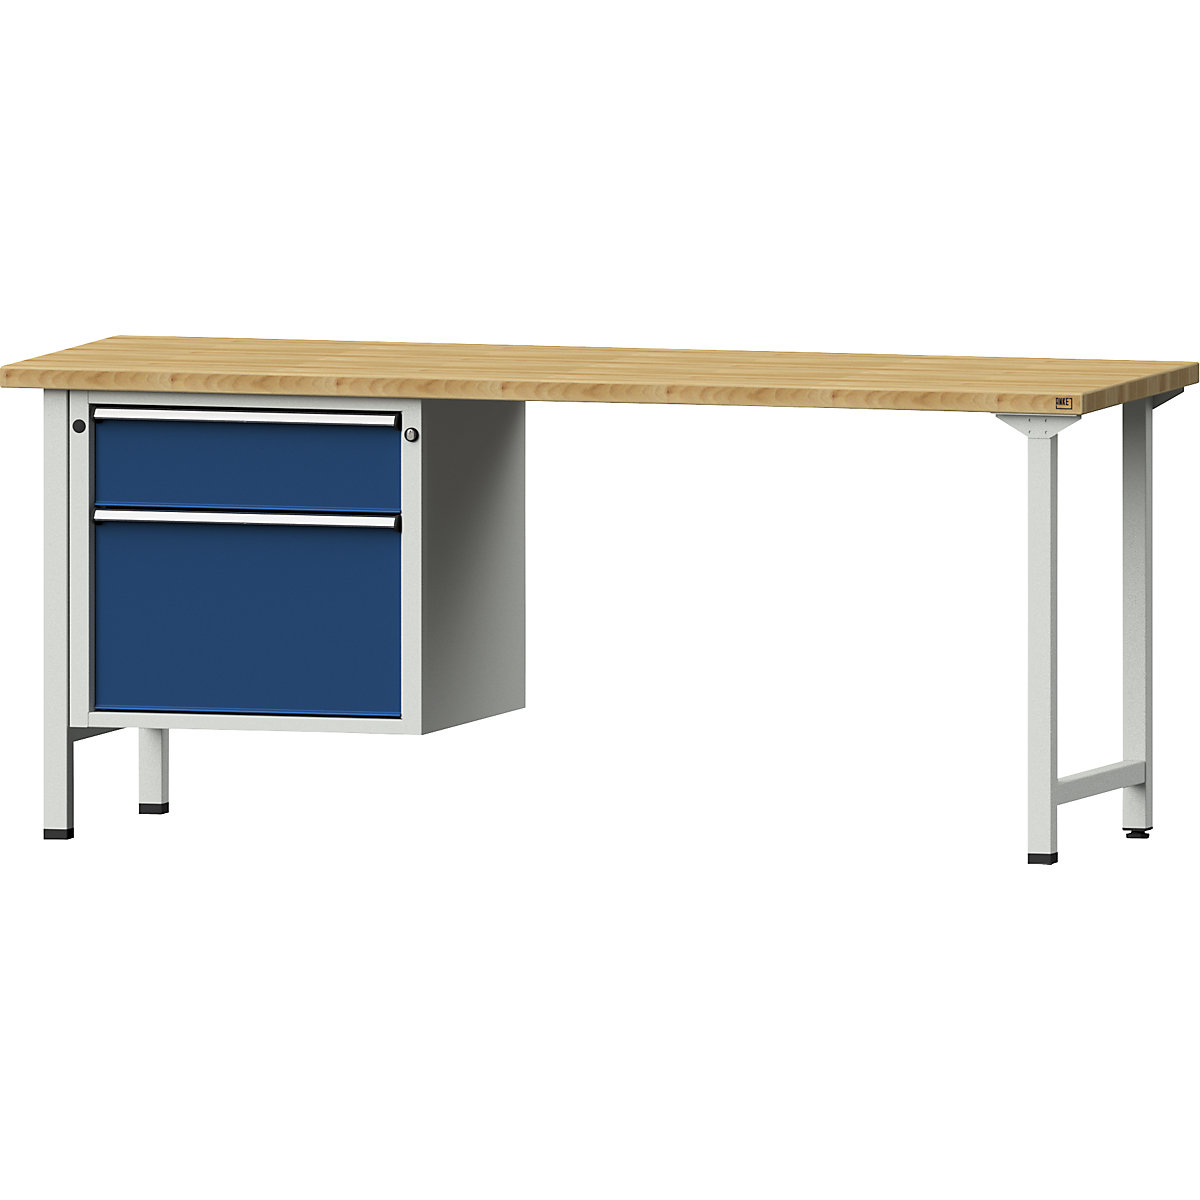 Dílenský stůl s rámovou konstrukcí – ANKE, 2 zásuvky, deska z bukového masivu, šířka 2000 mm-10